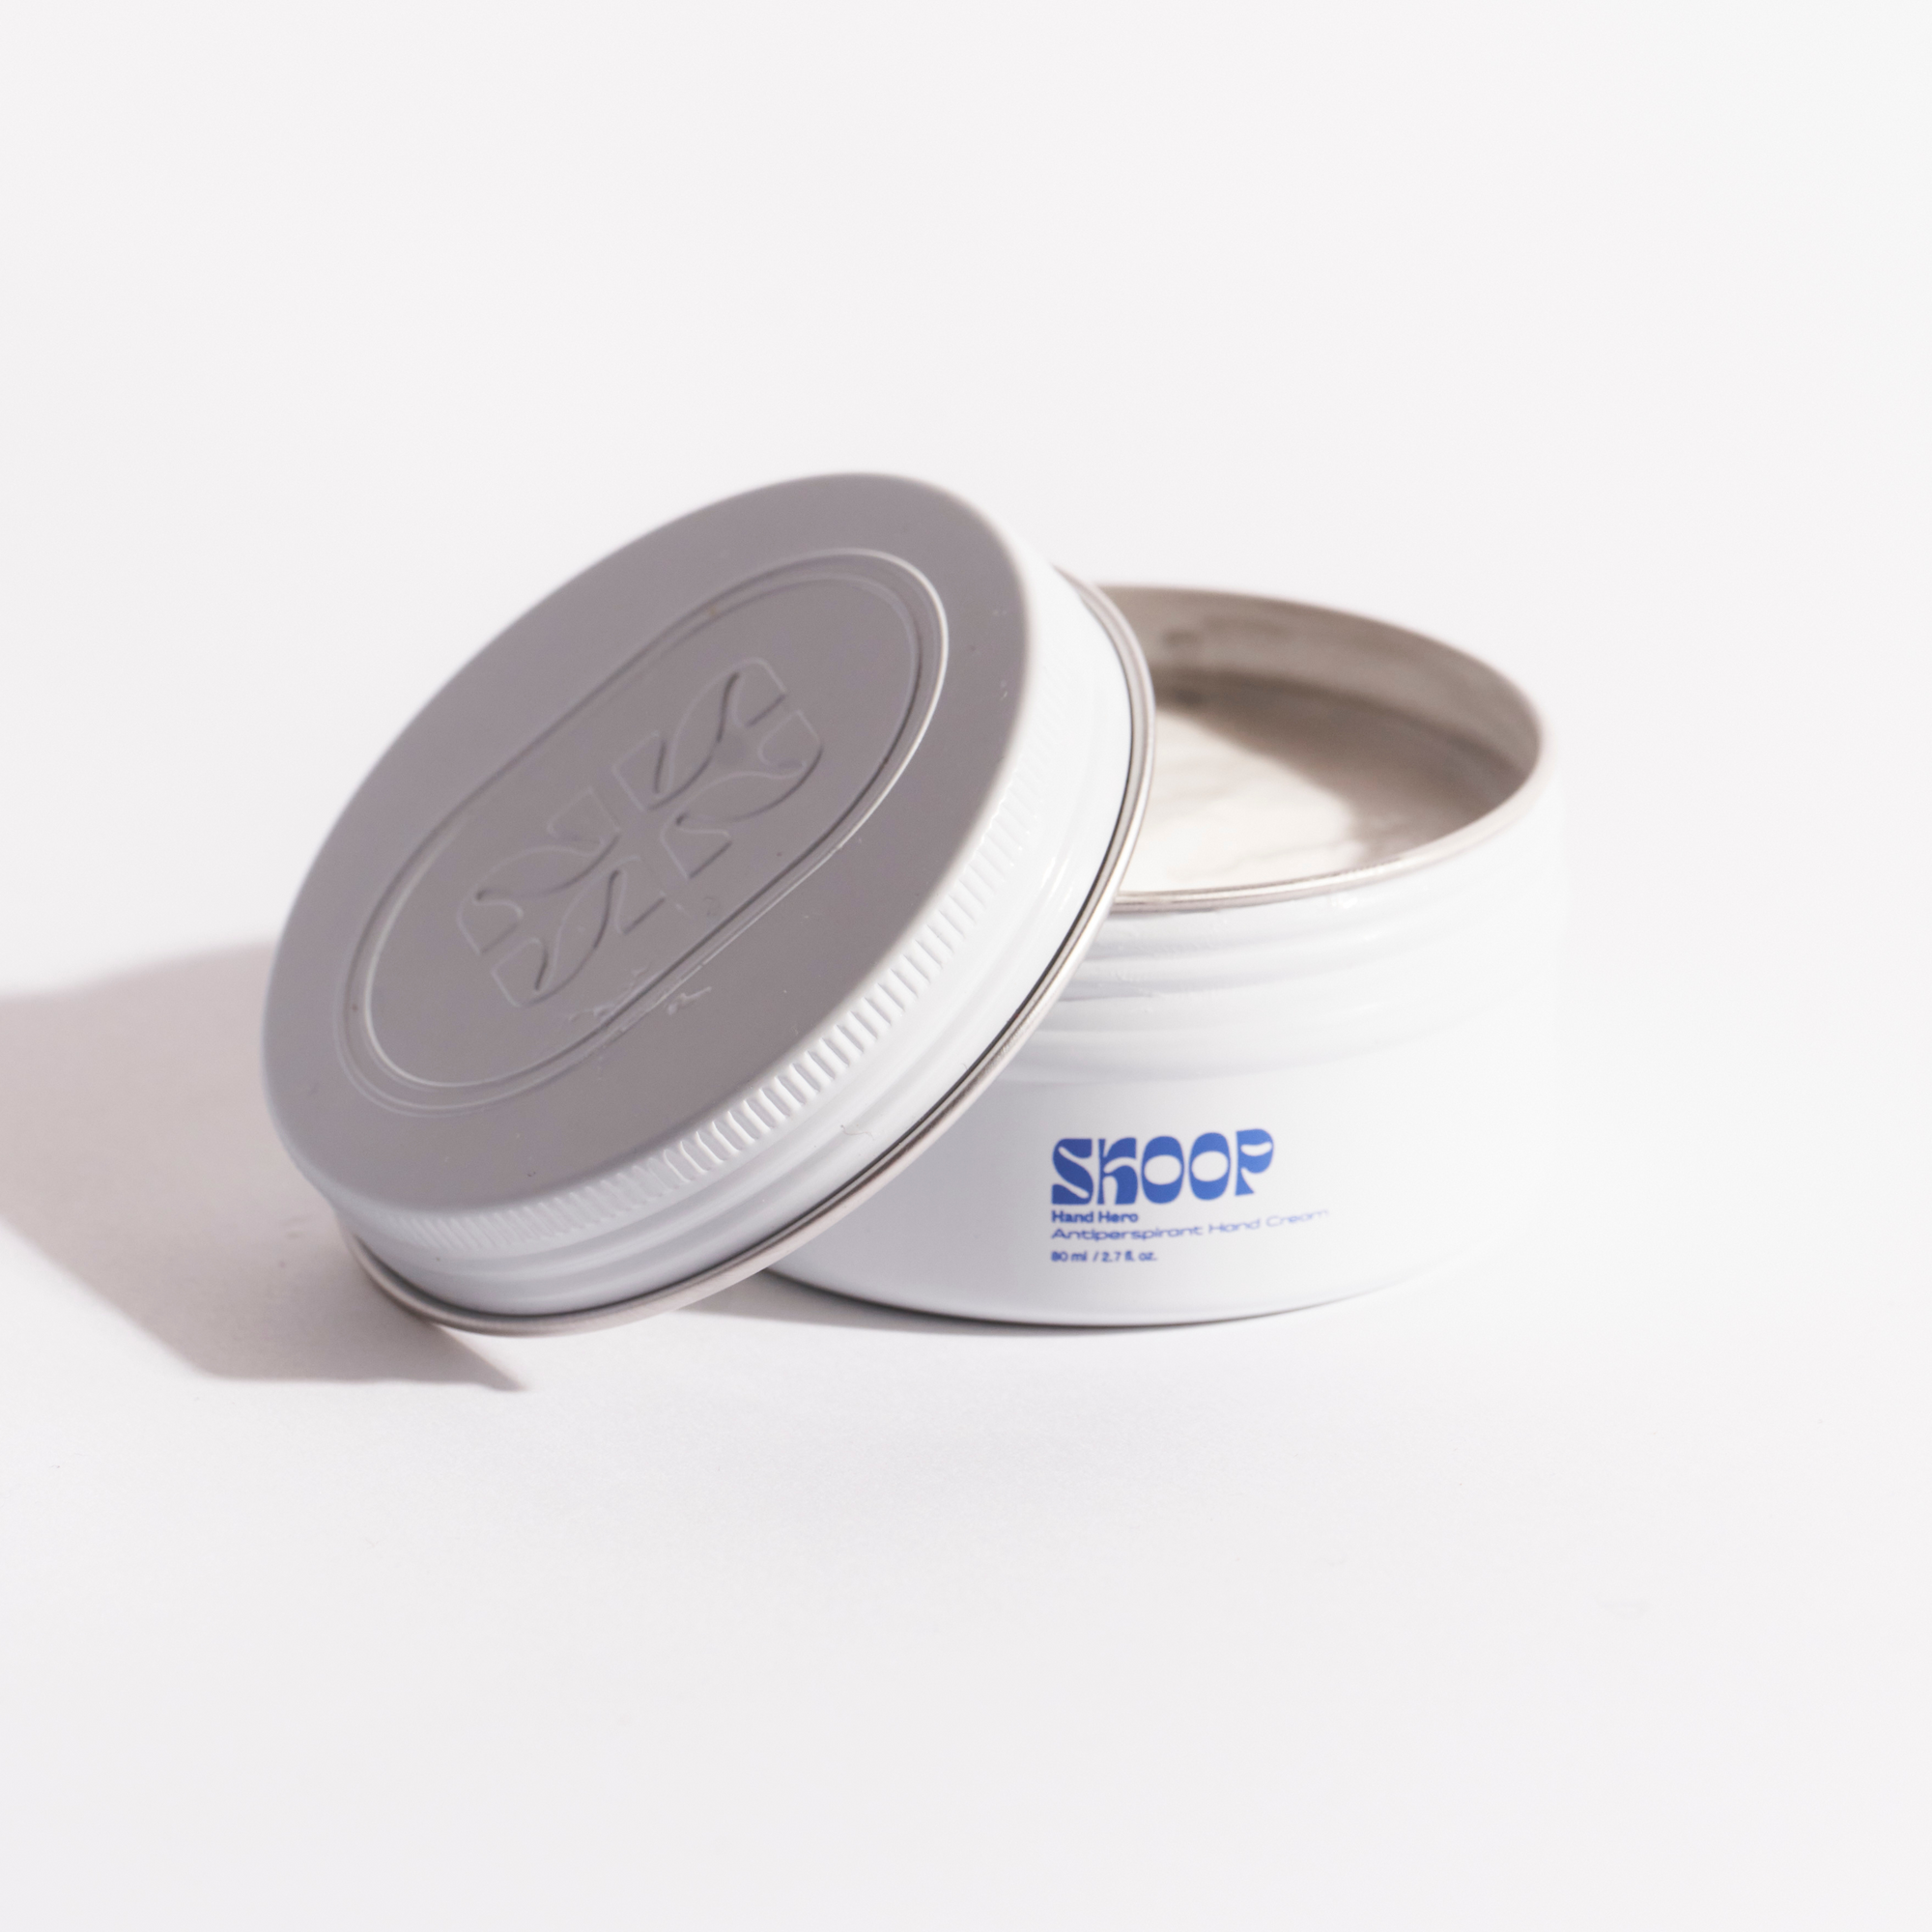 Skoop Skincare, Hand Hero Antiperspirant Hand Cream. Skoop Skincare Tin with Skoop logo visible. Lid off.